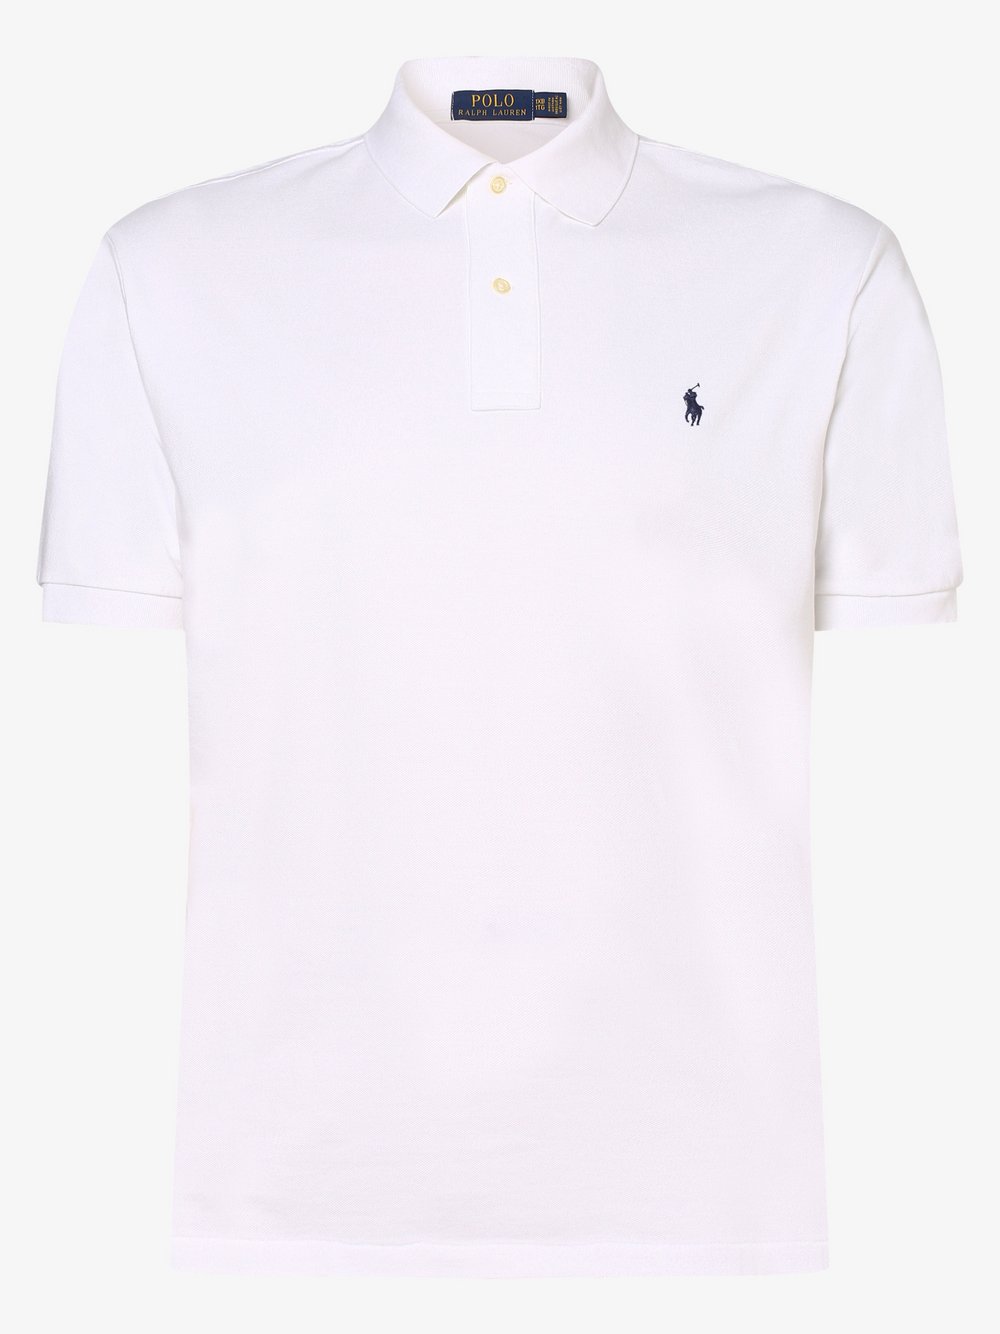 Polo Ralph Lauren - Męska koszulka polo – duże rozmiary, biały